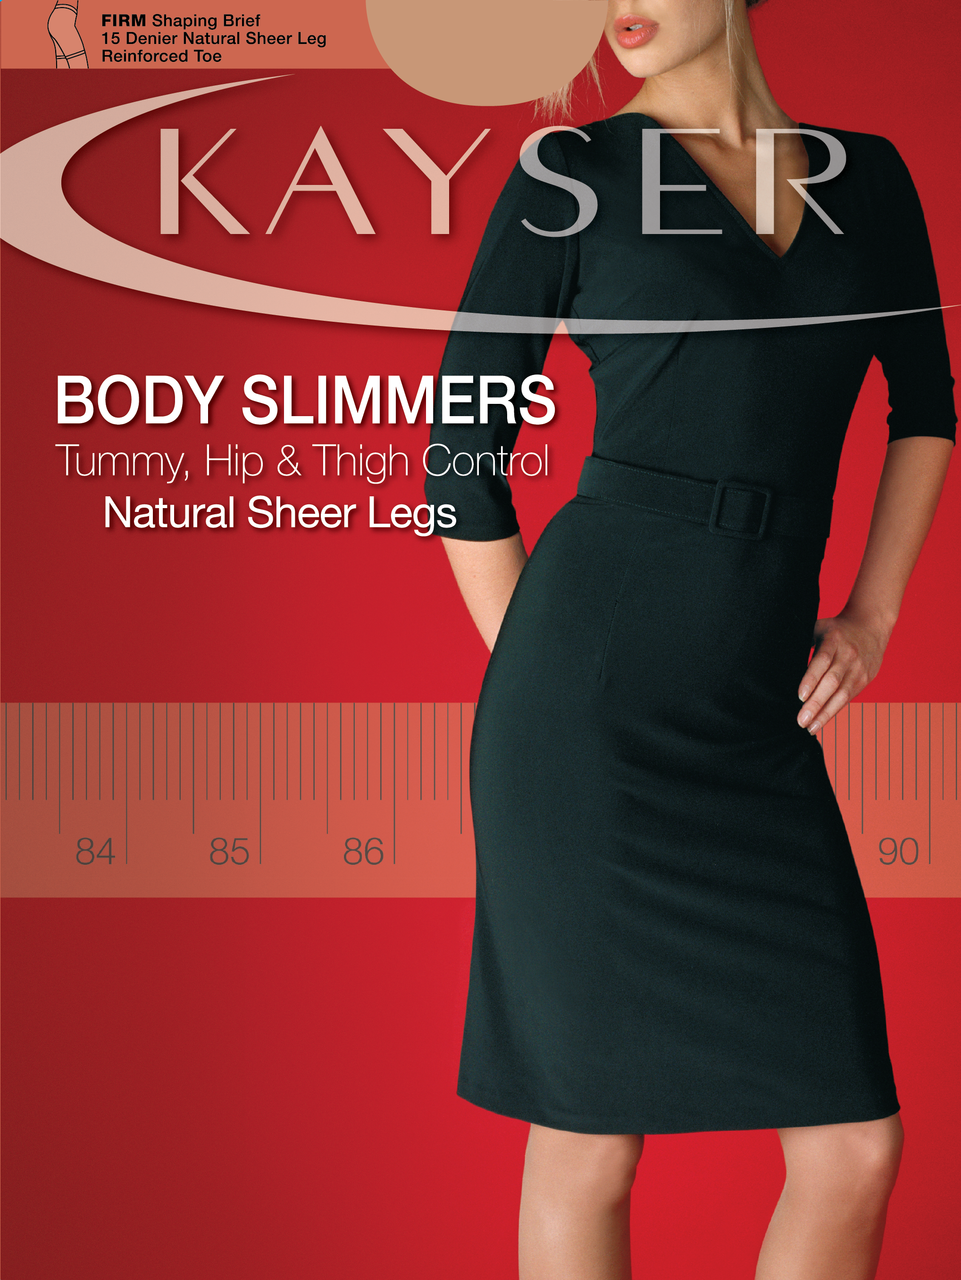 Kayser Body Slimmers Sheers